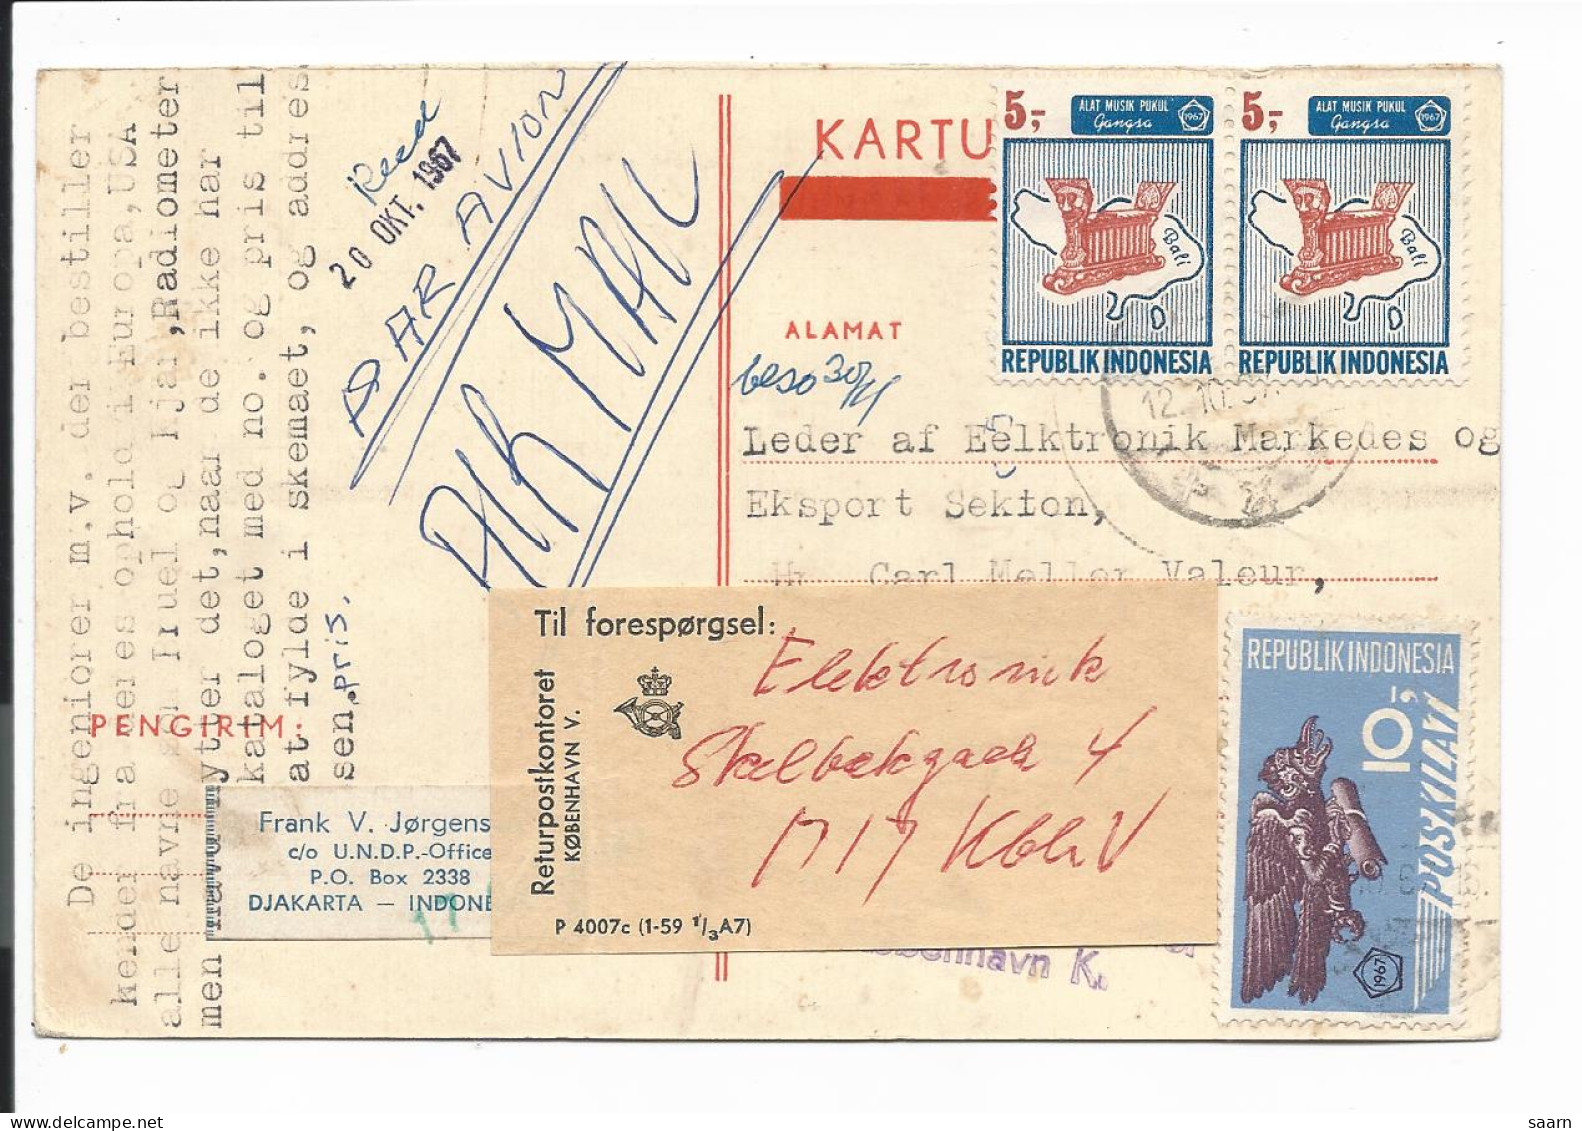 Indonesien P? Postkartenformular Ohne Wertangabe 1967 Mit 20 S. Marken N. Dänemark Per Lp, Retour Da Adresse Ungenügend - Indonésie